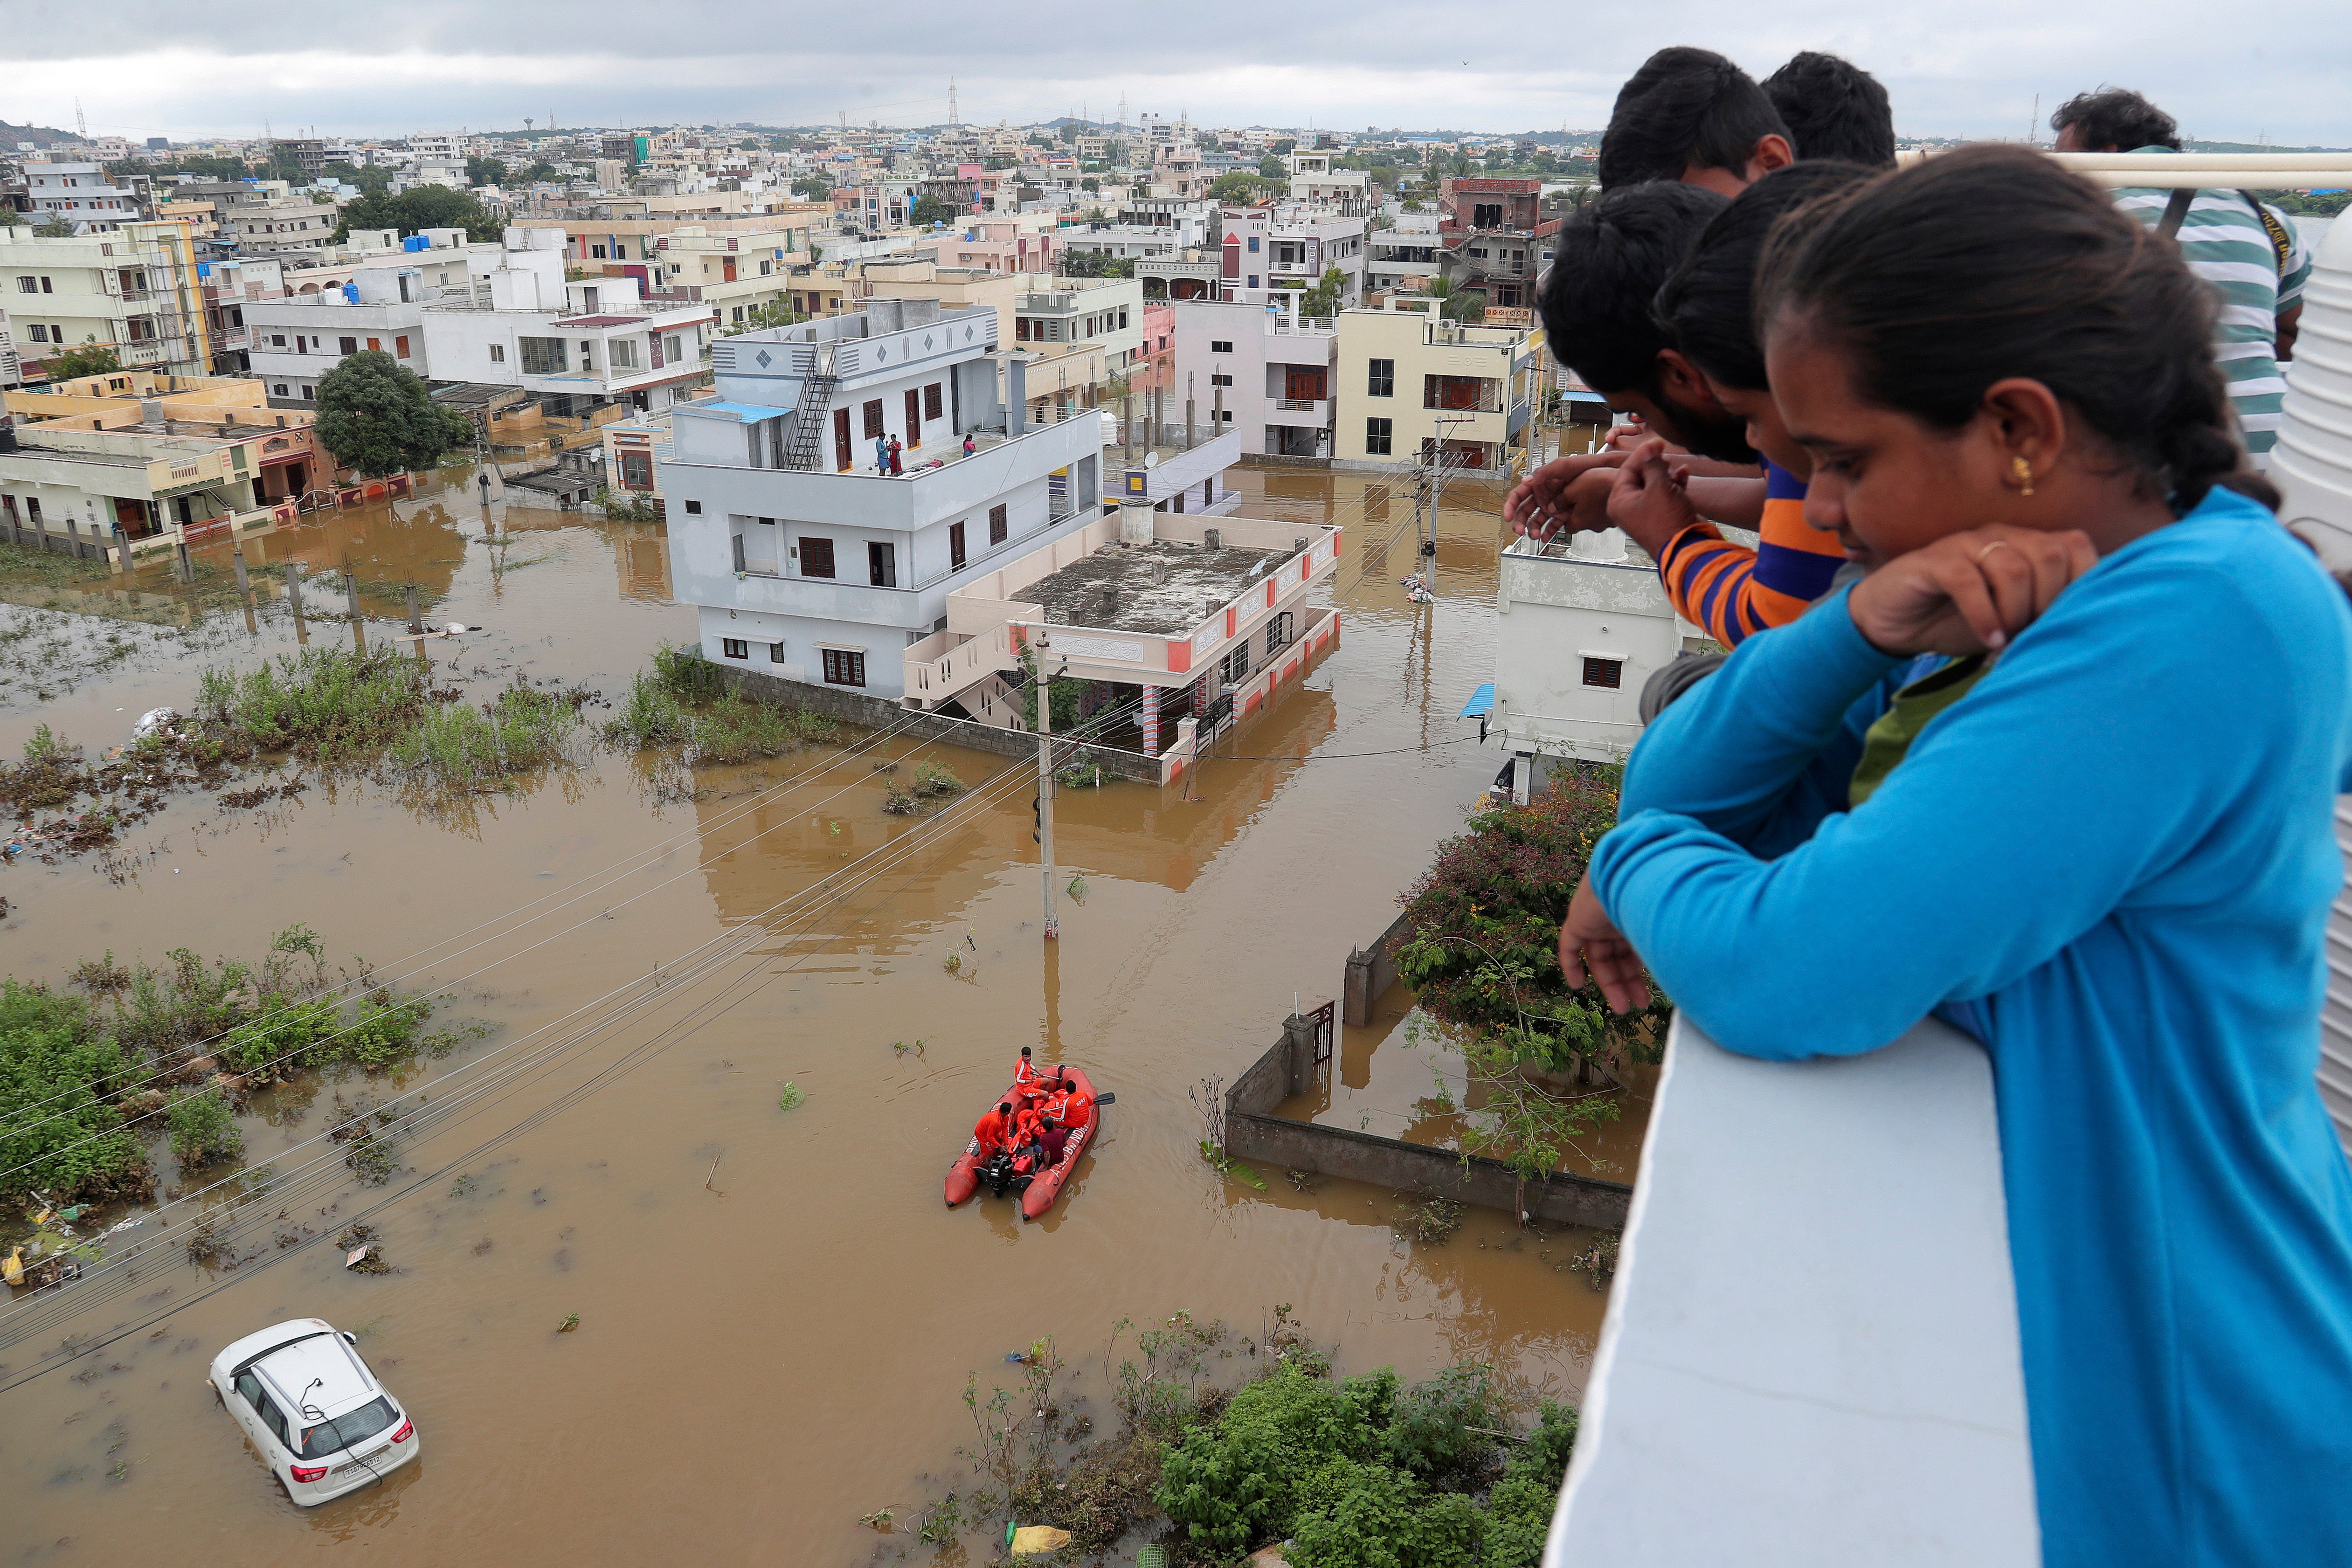 Los residentes miran una calle inundada por las inundaciones después de las fuertes lluvias en Hyderabad, India